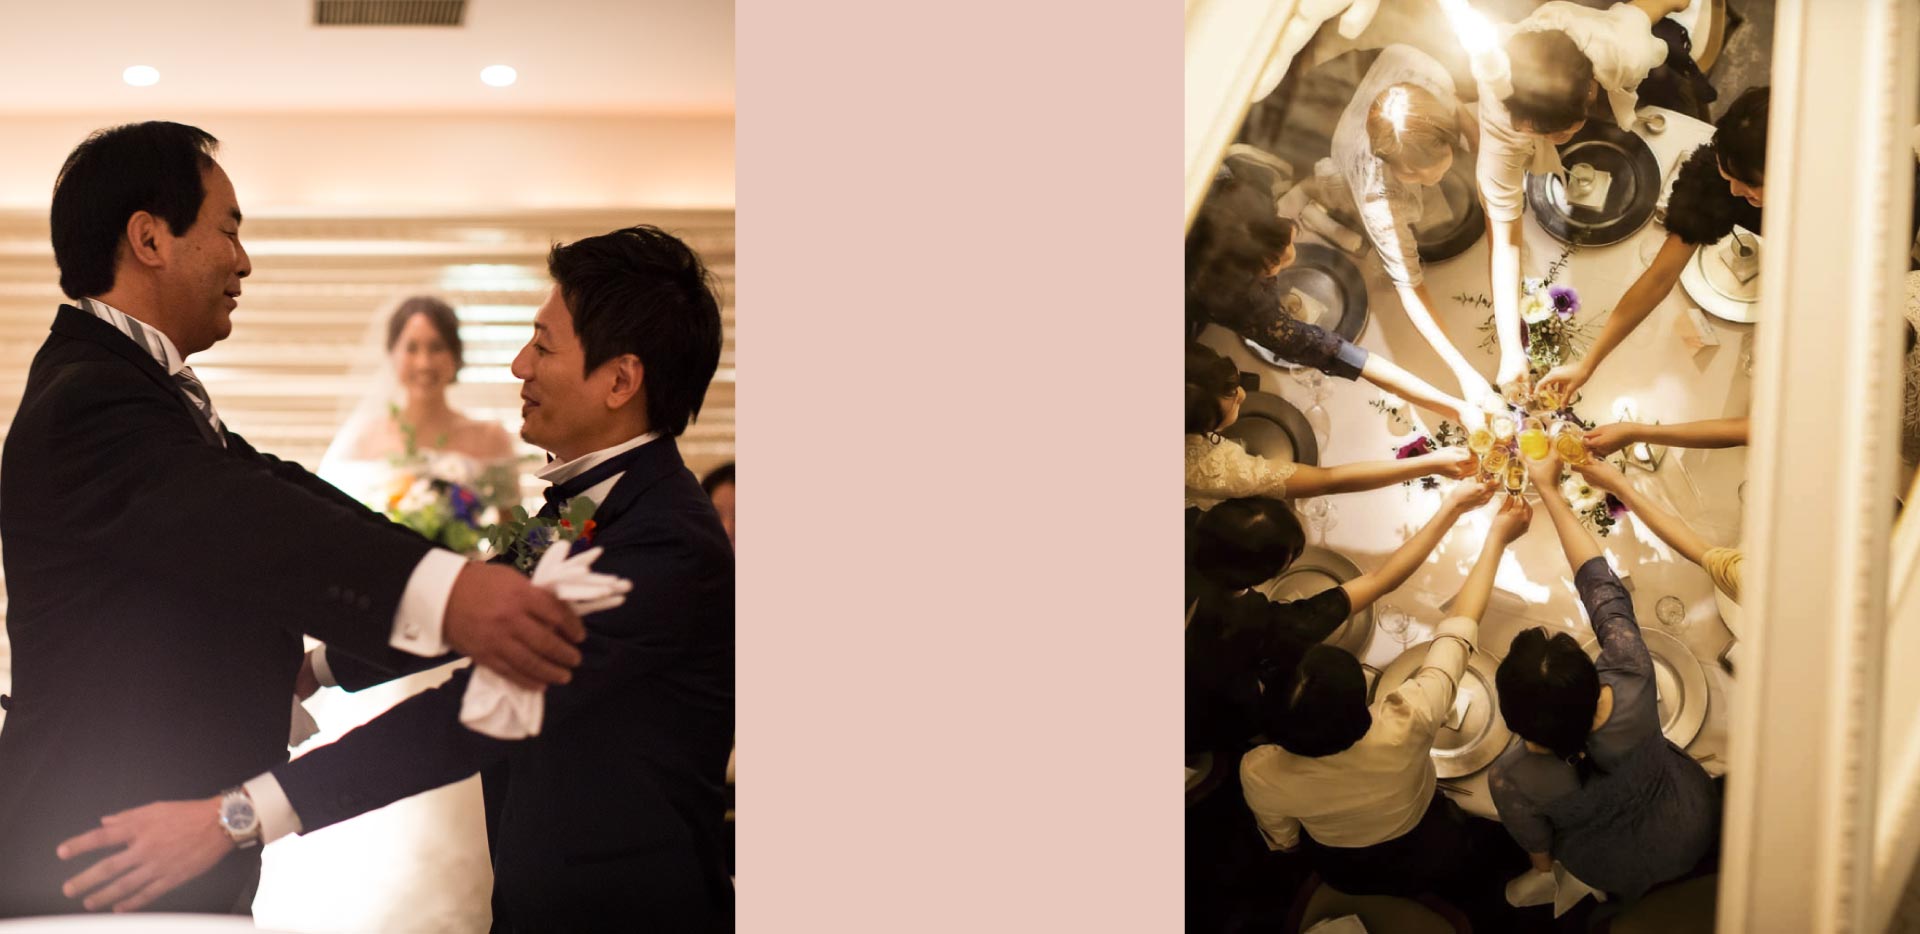 ザ マグリット | 岡山県岡山市の結婚式場・パーティーウェディング・おもてなしウェディング 岡山 結婚式場 マグリット ウェディング PC